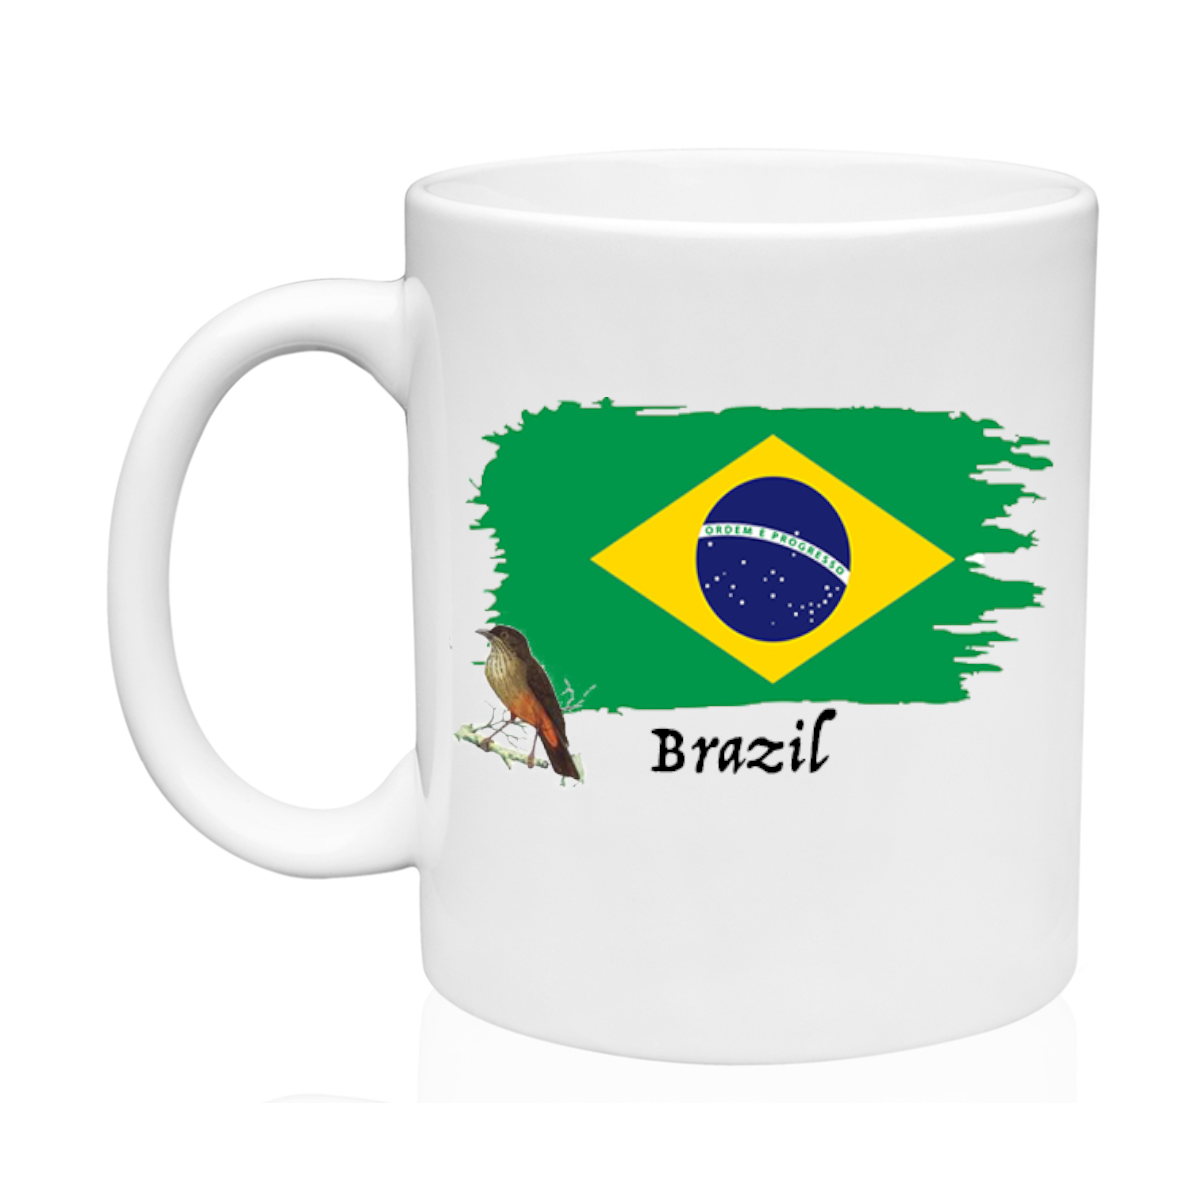 AGAD Turista (I Love Brazil Ceramic Mug)